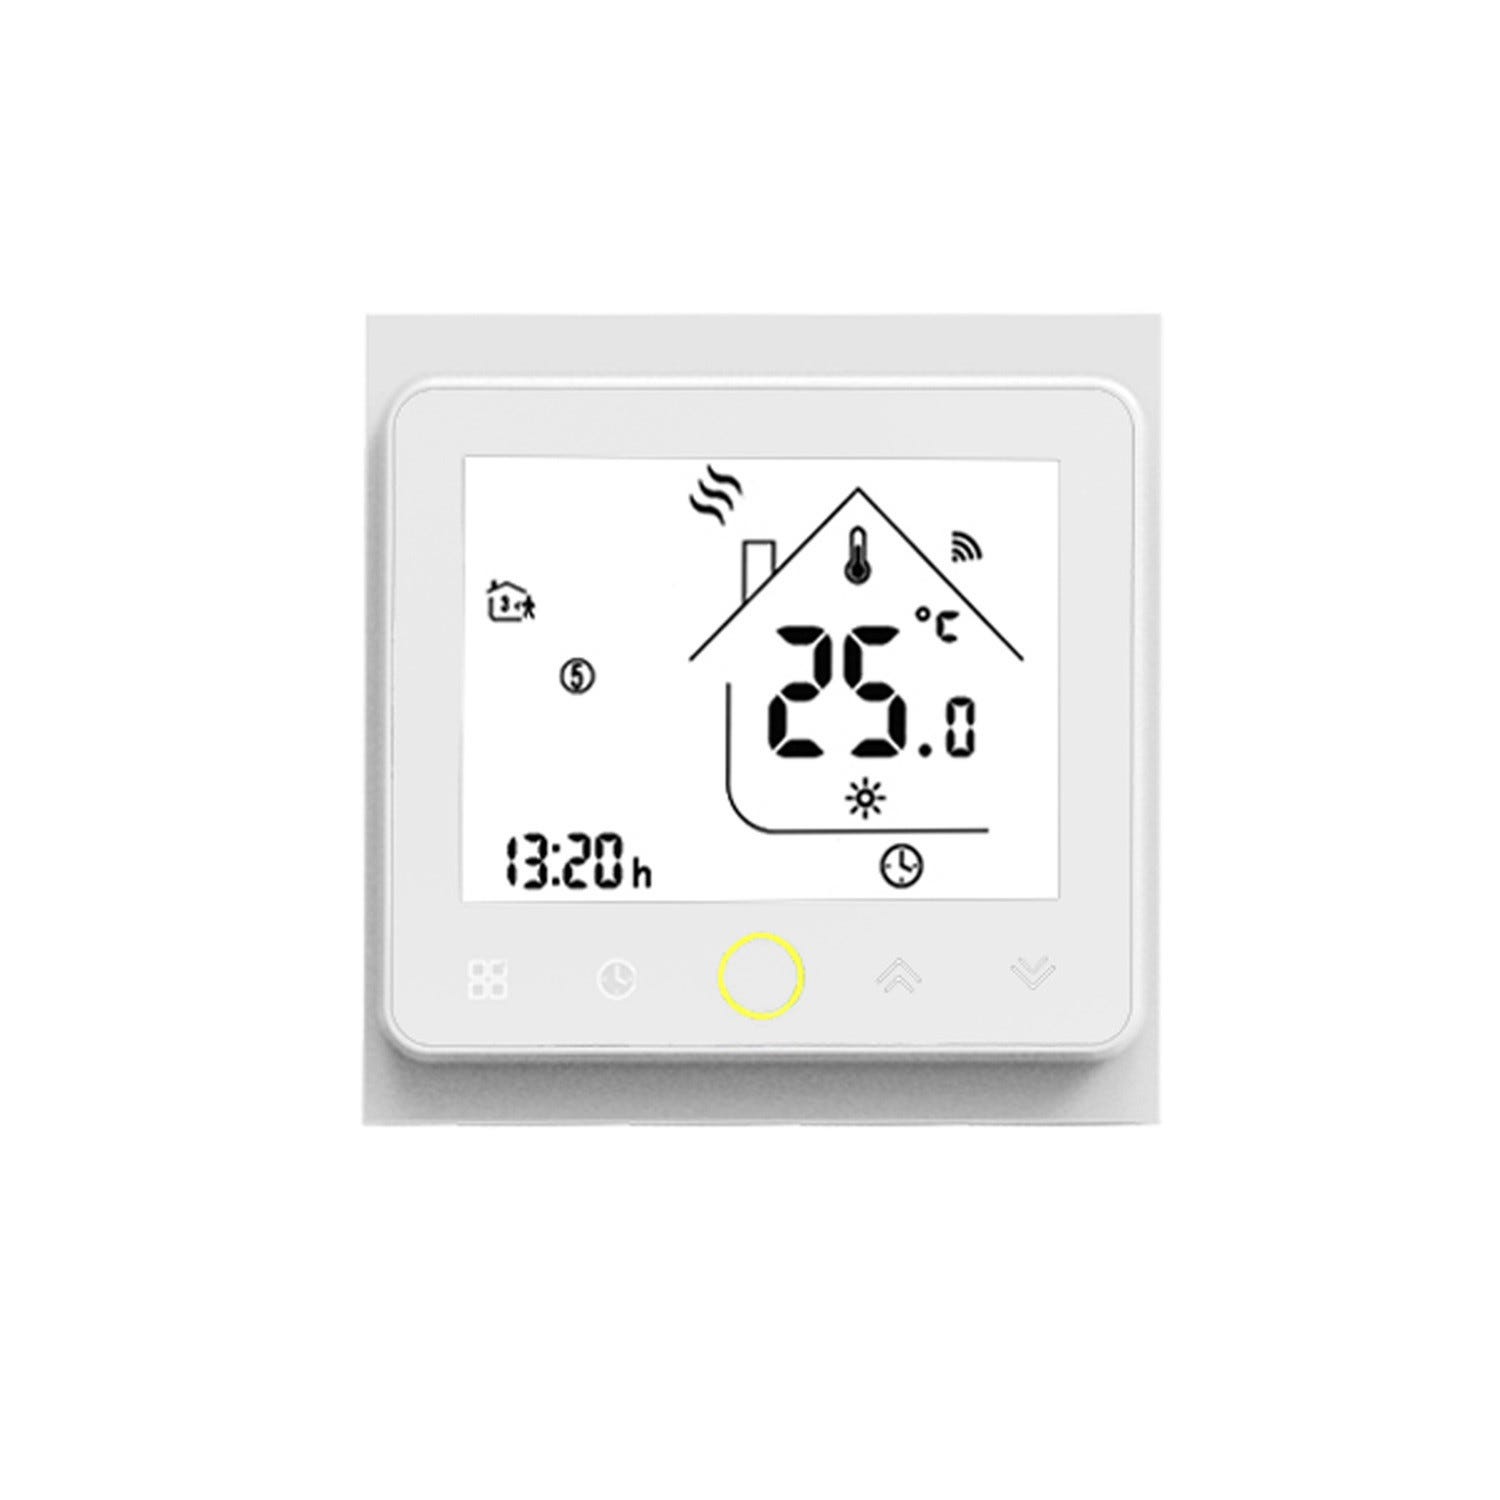 Prise thermostat intelligente pour application programmable de